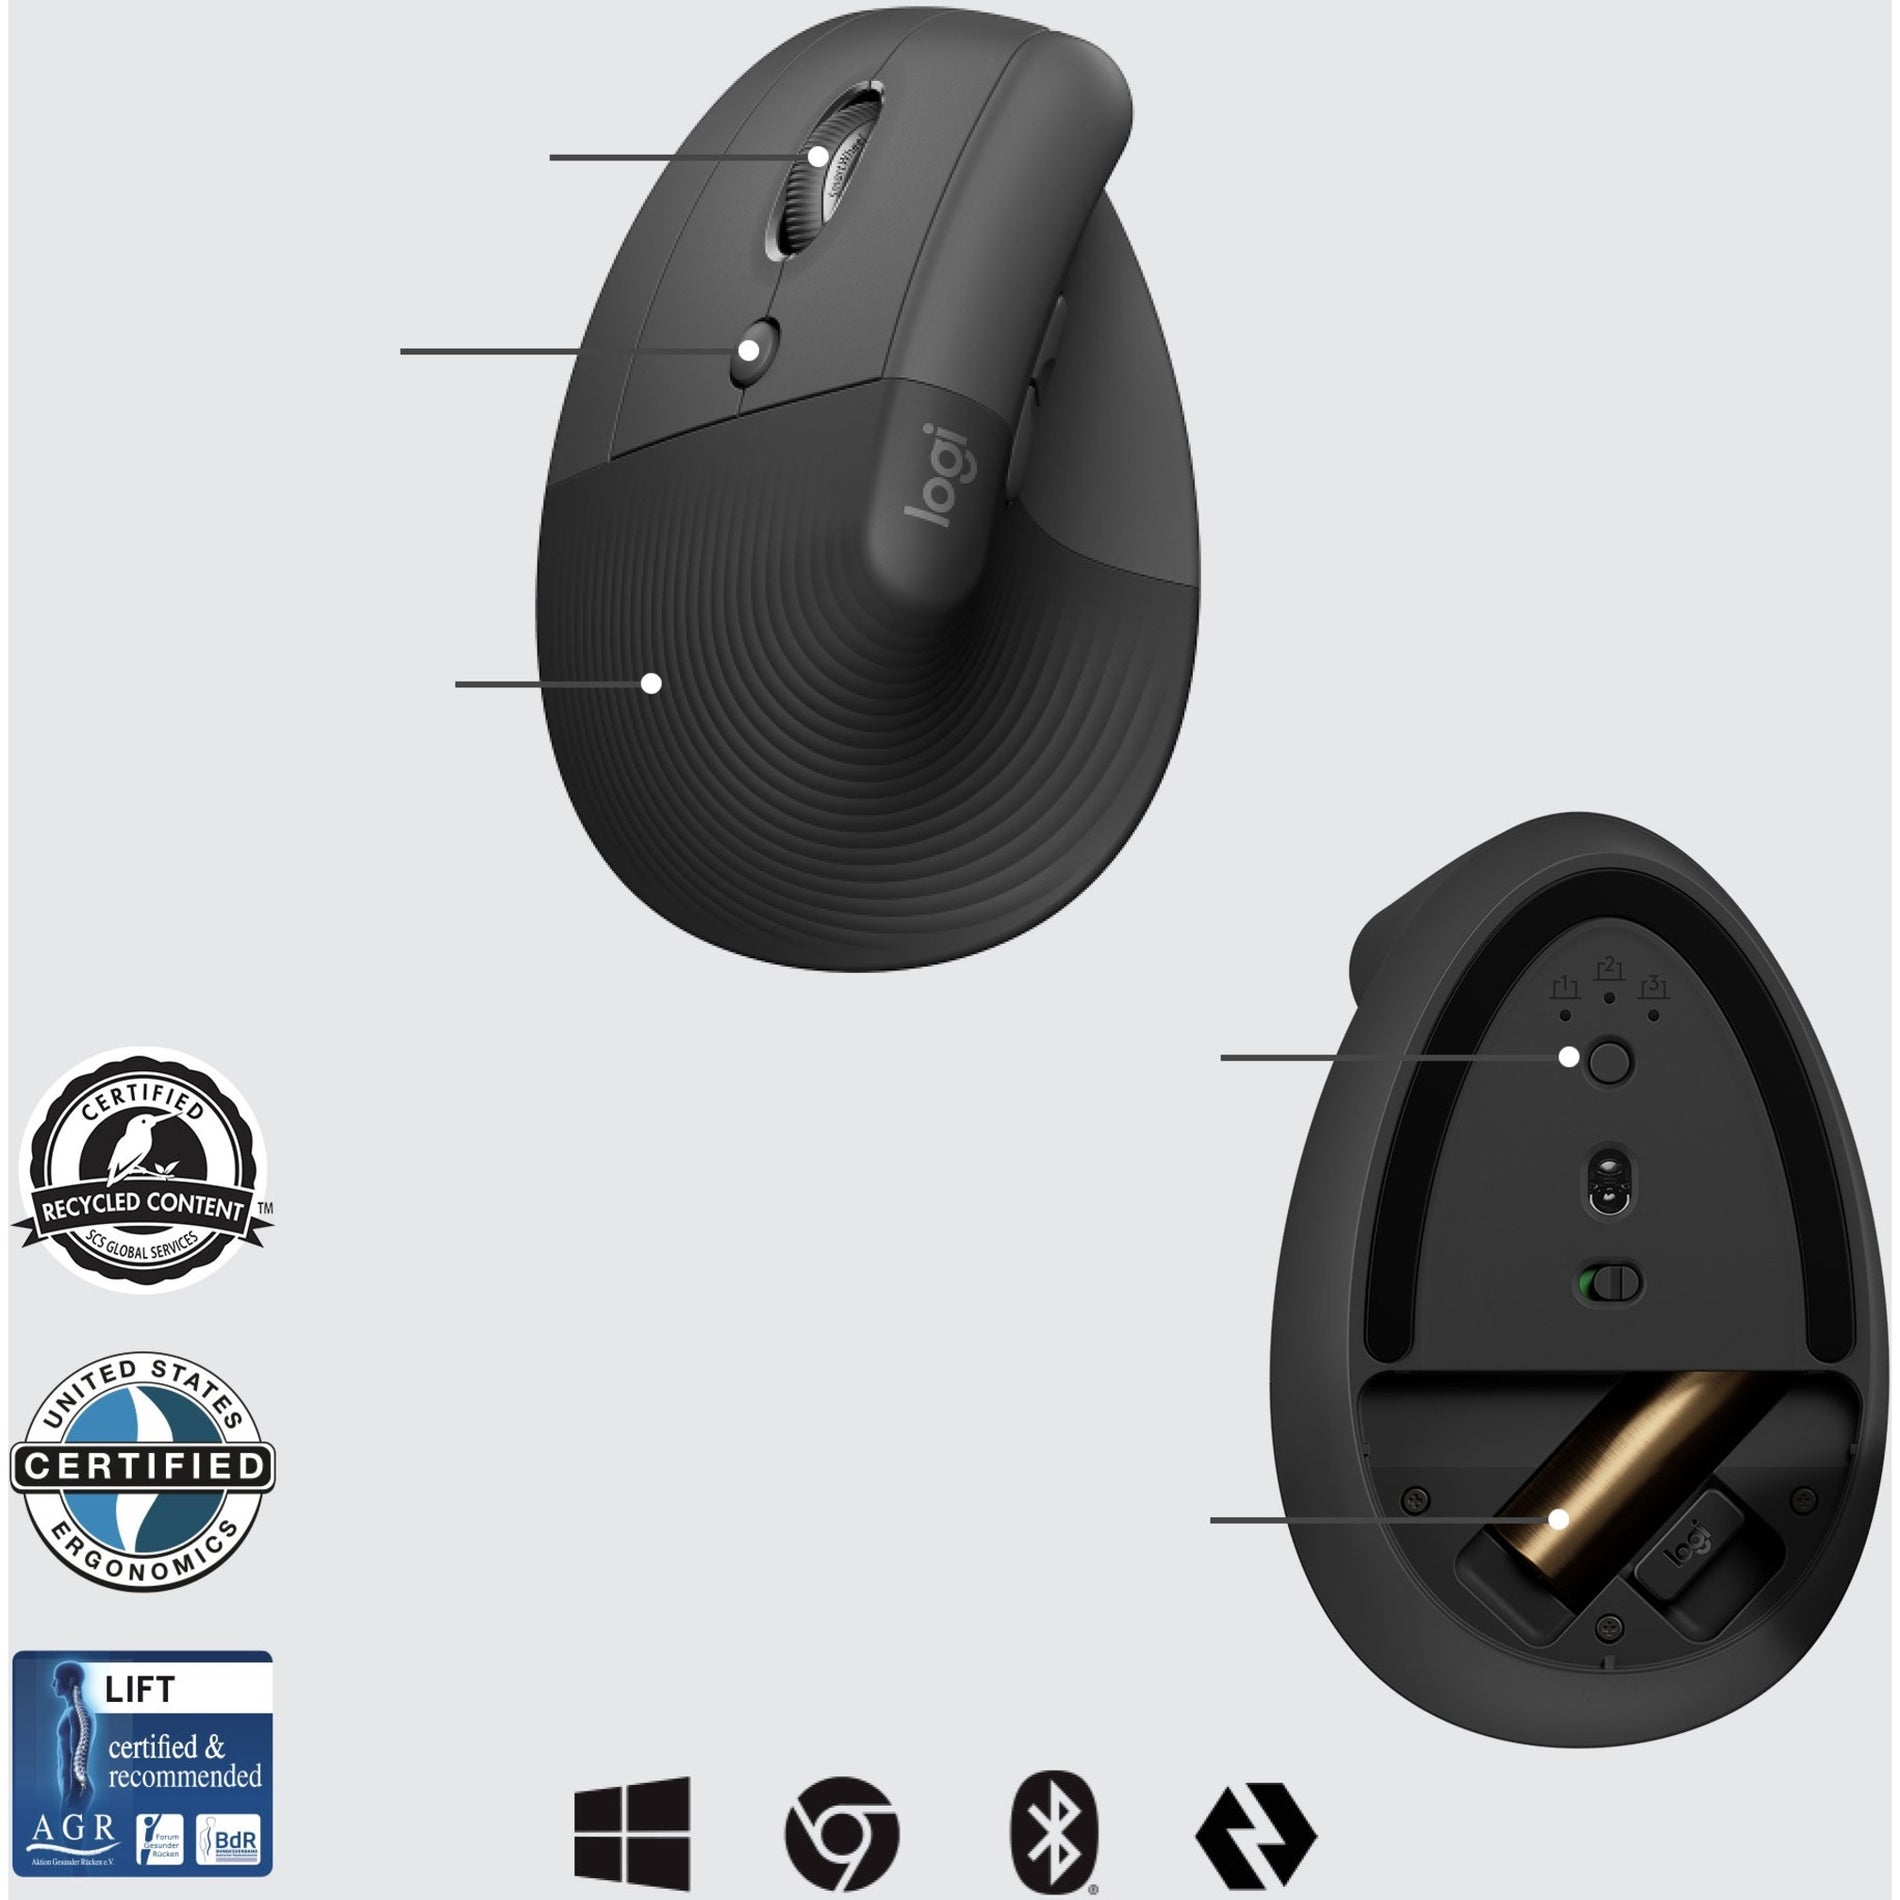 Logitech 910-006492 Lift Ergo Mouse, Left-Handed, Graphite, Wireless, 4000 dpi